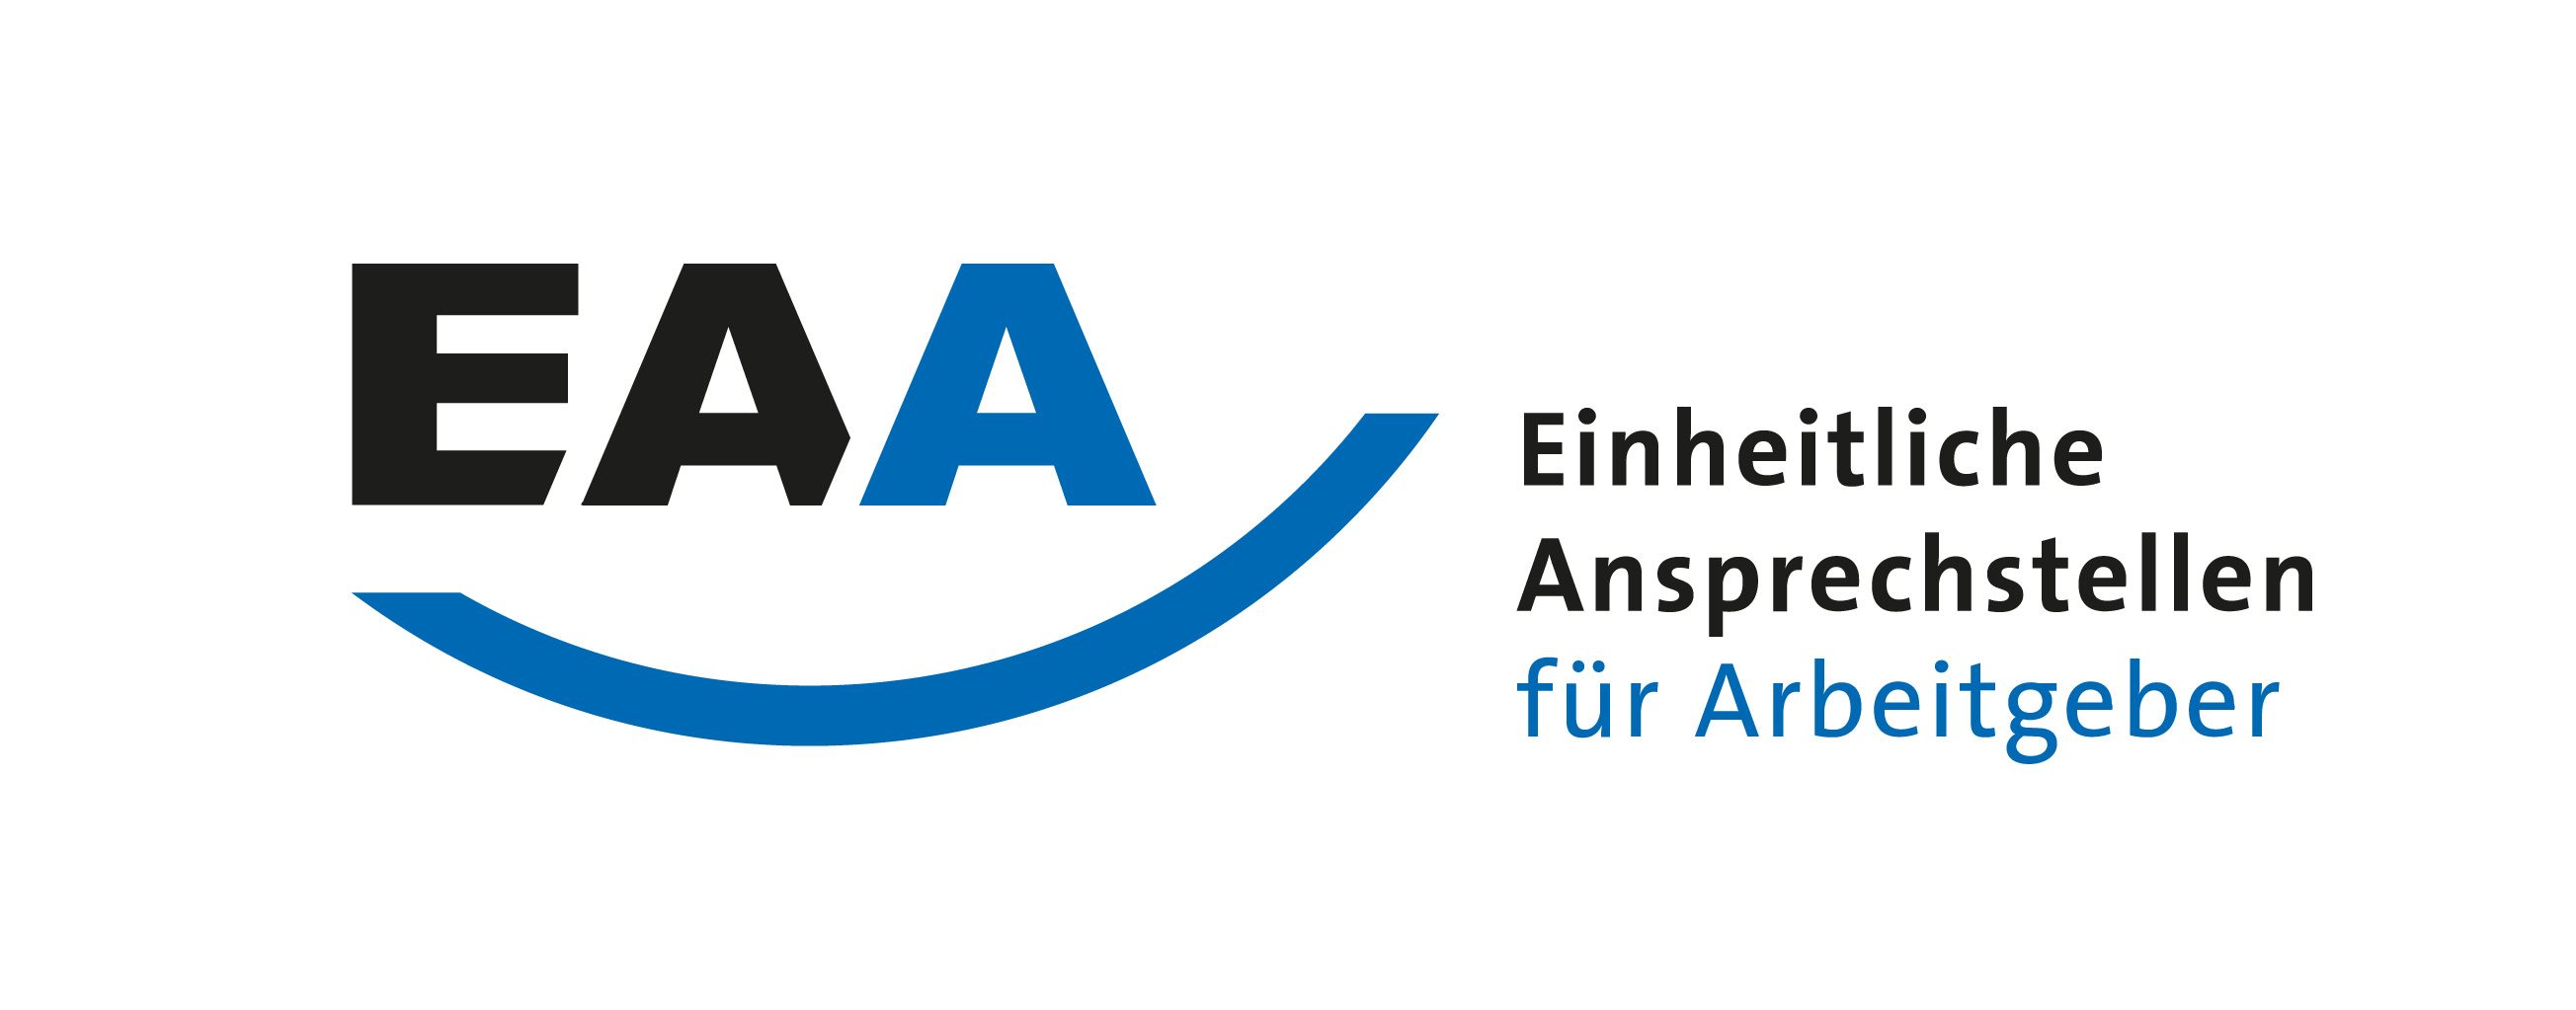 Logo für die Einheitlichen Ansprechstellen für Arbeitgeber (EAA)